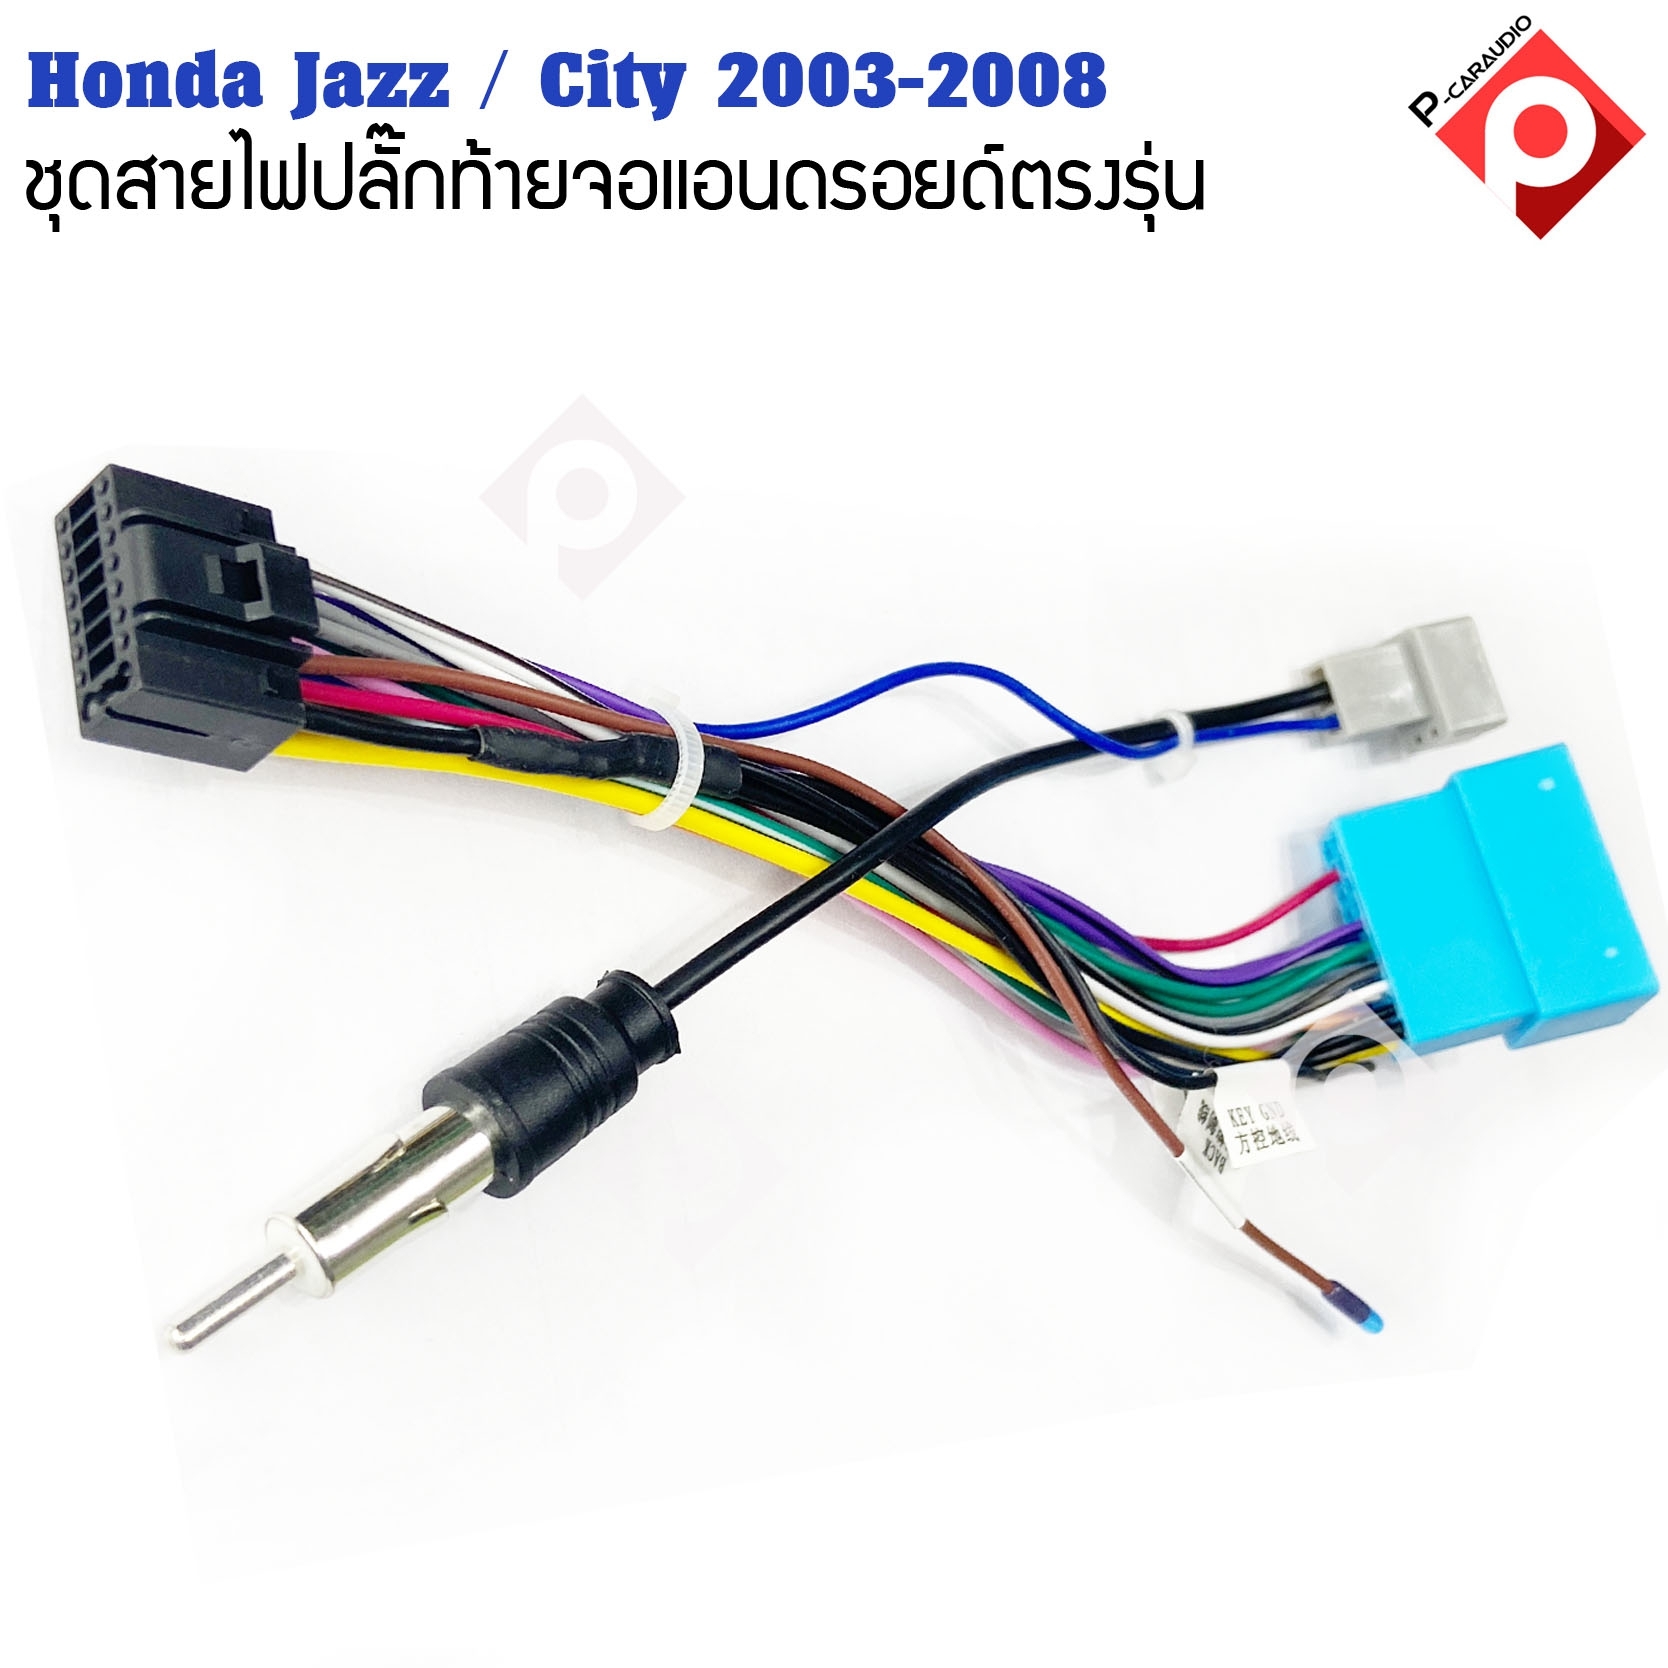 ปลั๊กหลังวิทยุแอนดรอยตรงรุ่น Honda Jazz 2004-2007 / City 2003-2008 ราคาถูก เครื่องเสียงรถยนต์